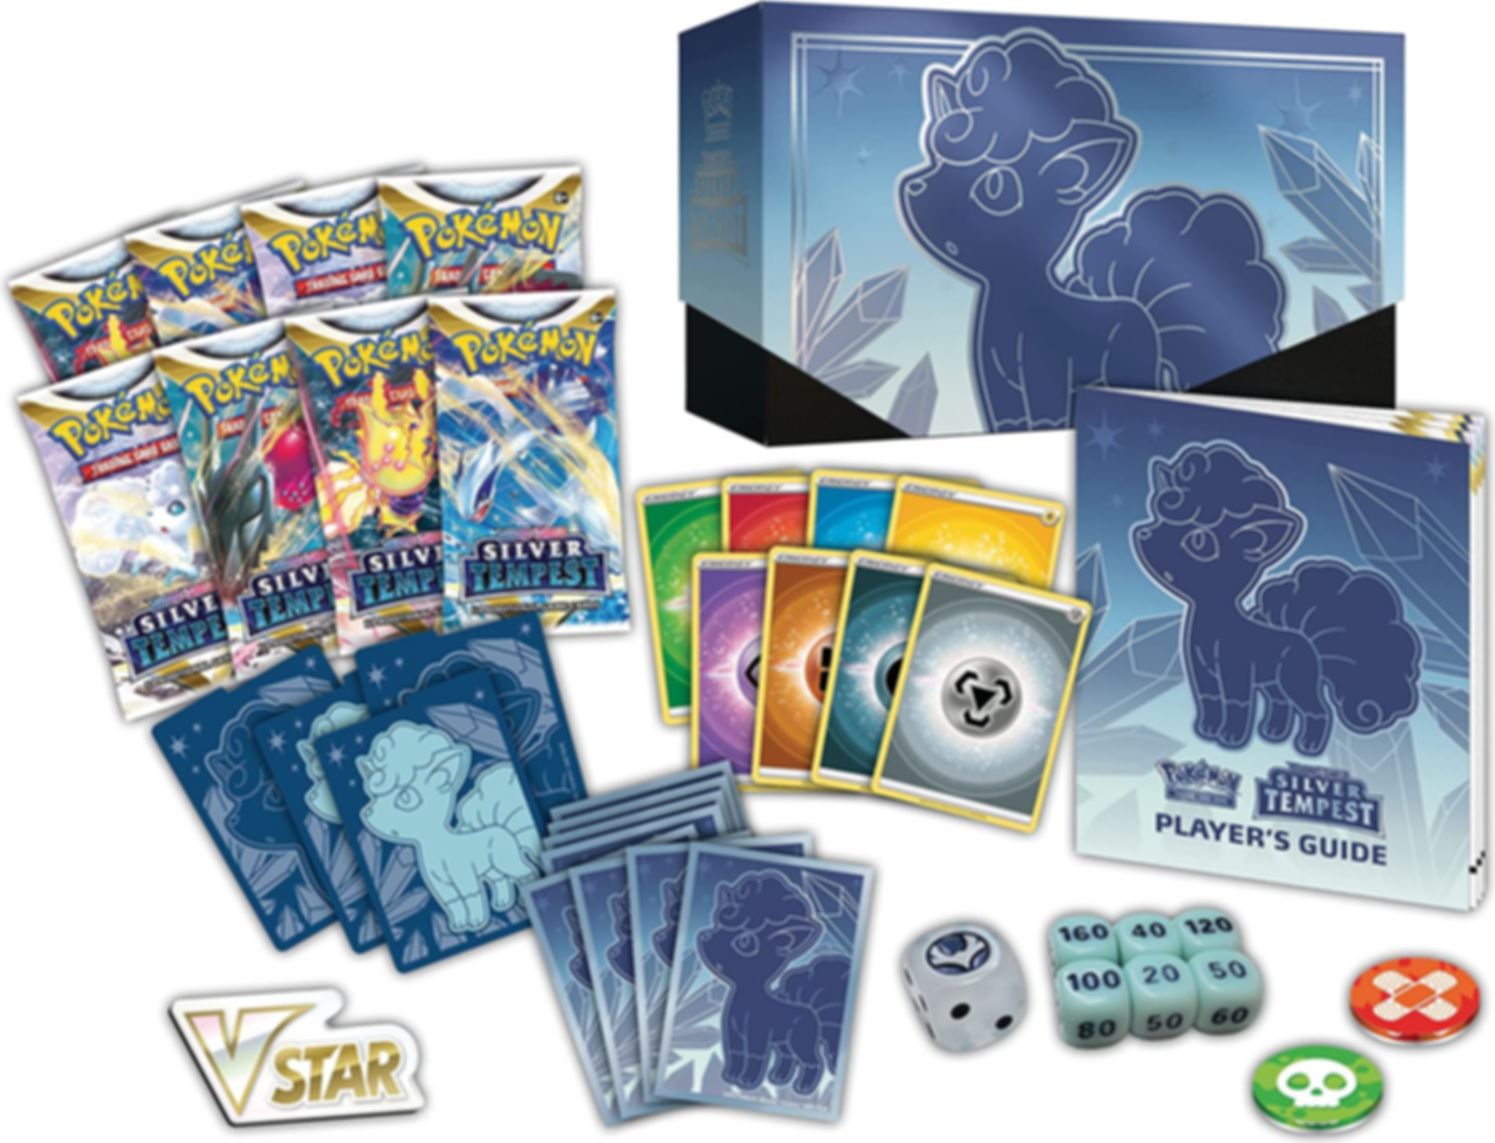 Pokémon TCG: Sword & Shield-Silver Tempest Elite Trainer Box components